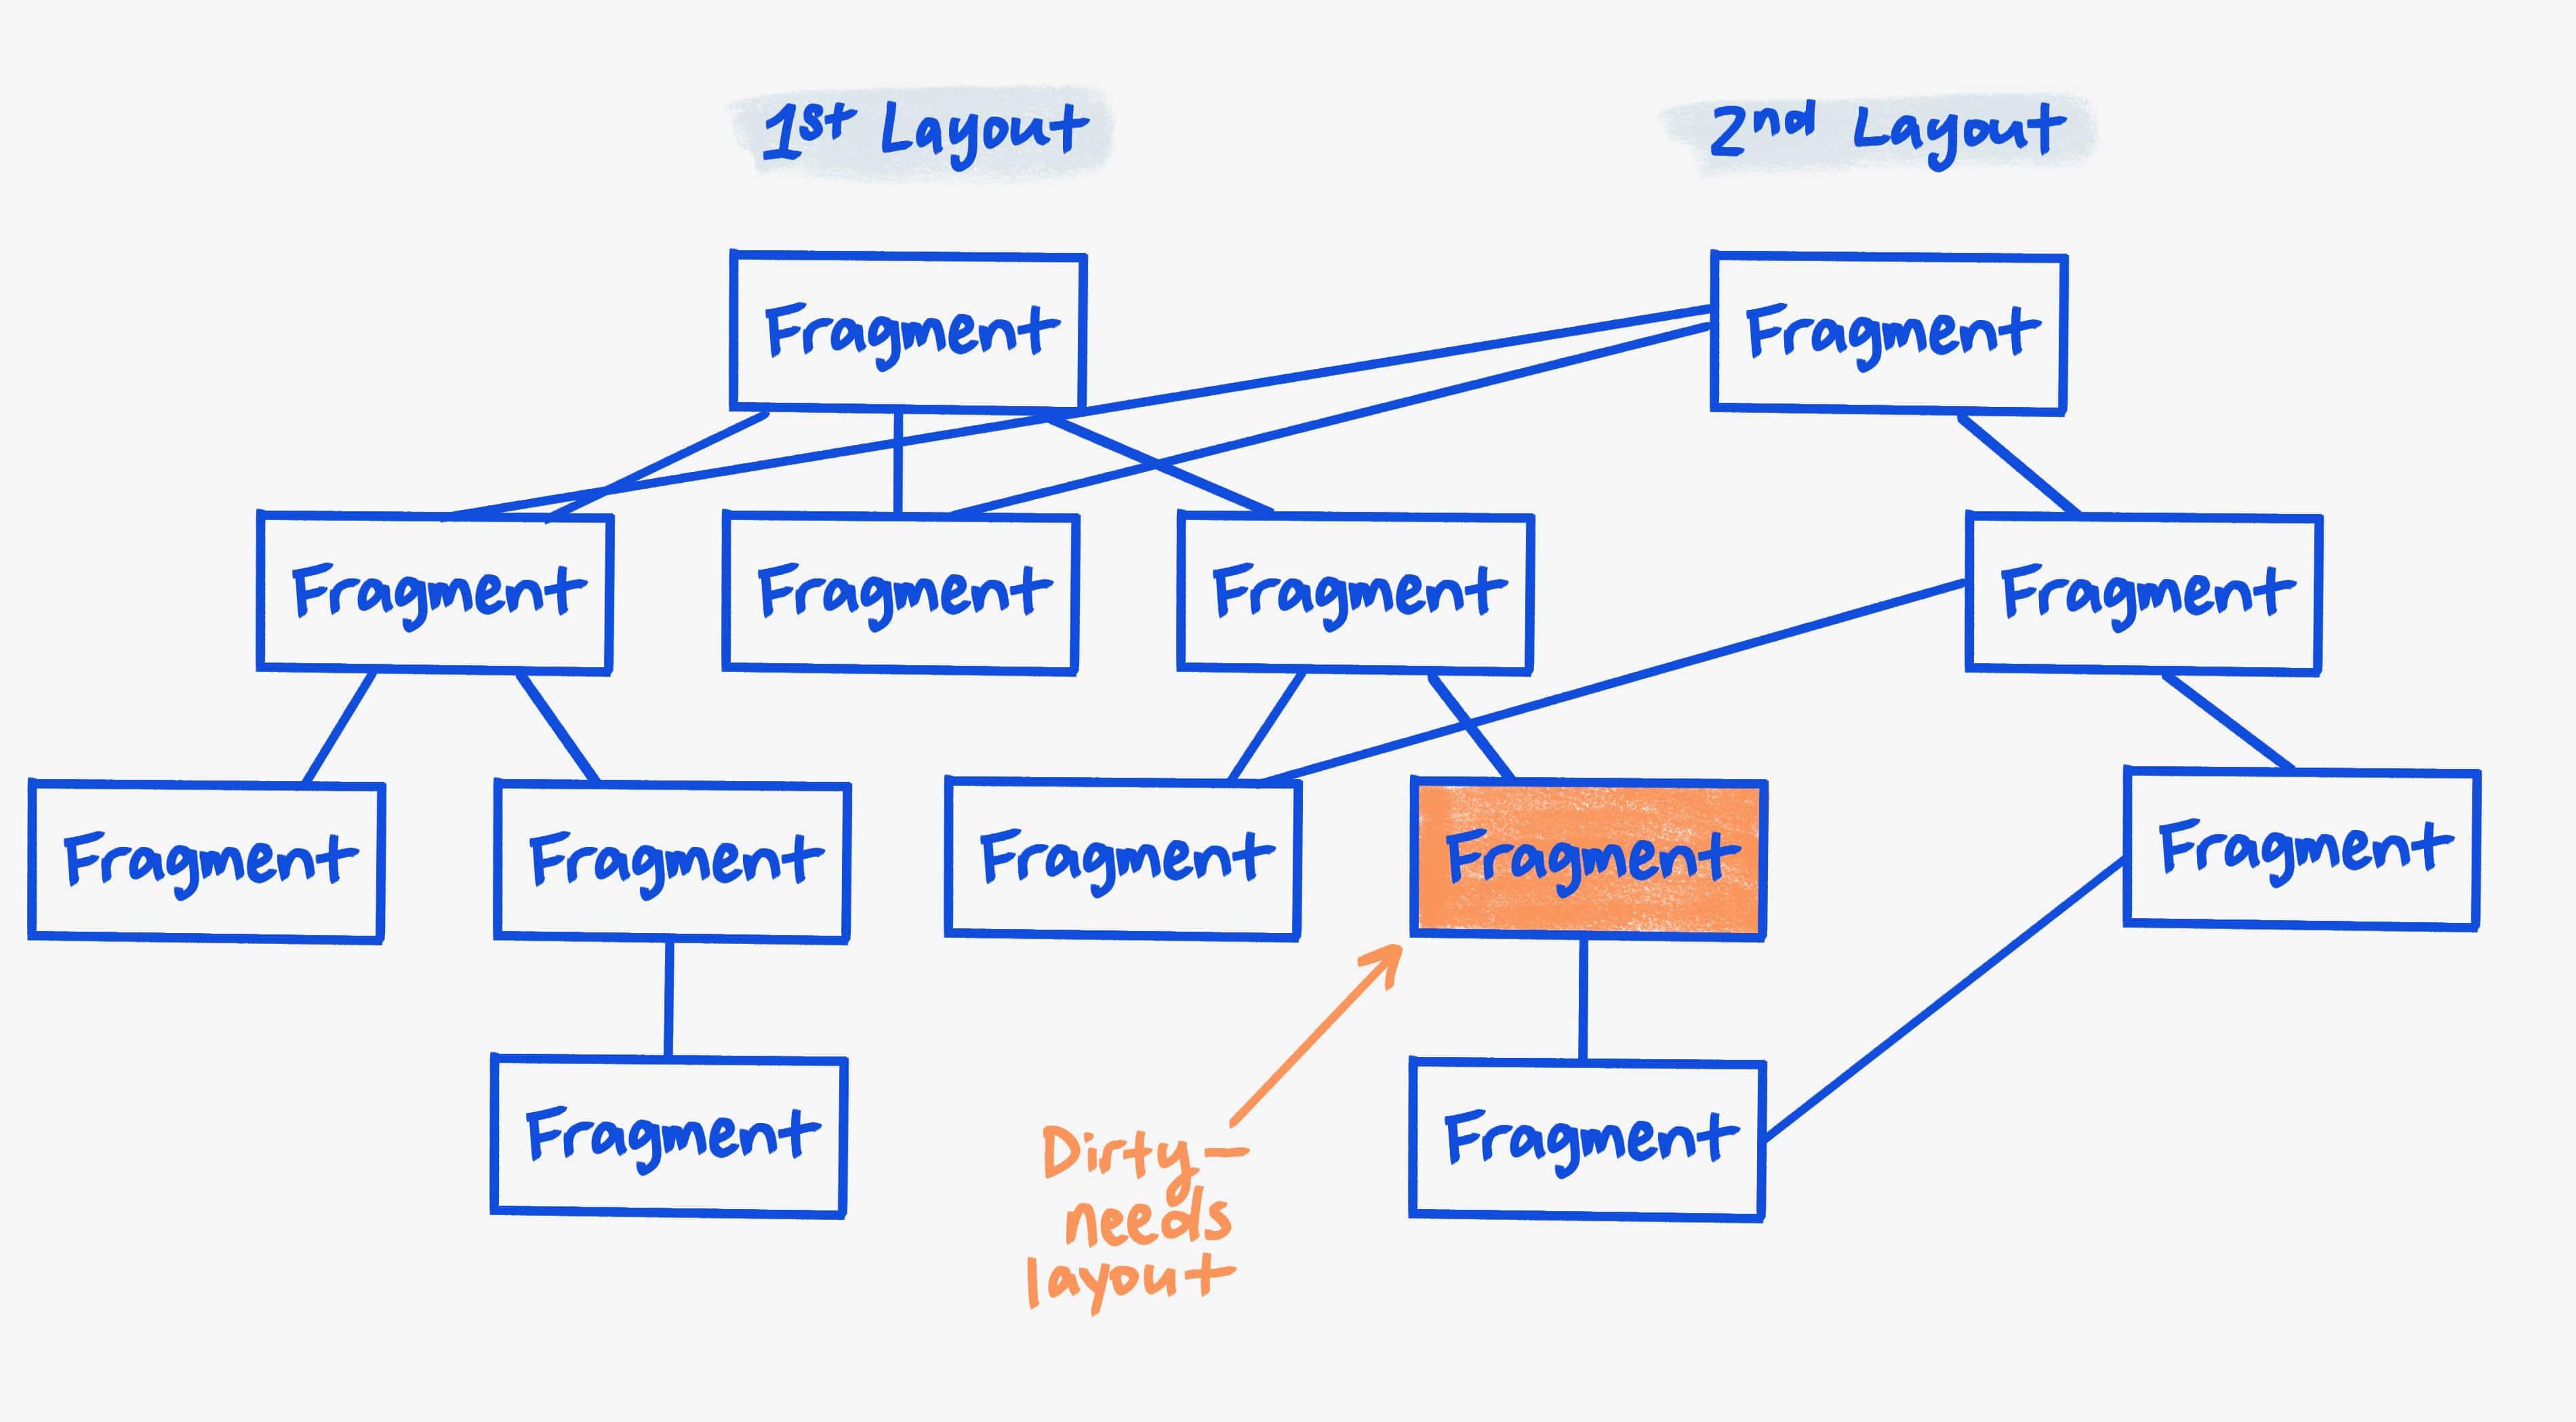 Représentation des fragments dans chaque arborescence, avec un fragment marqué comme nécessitant une mise en page.